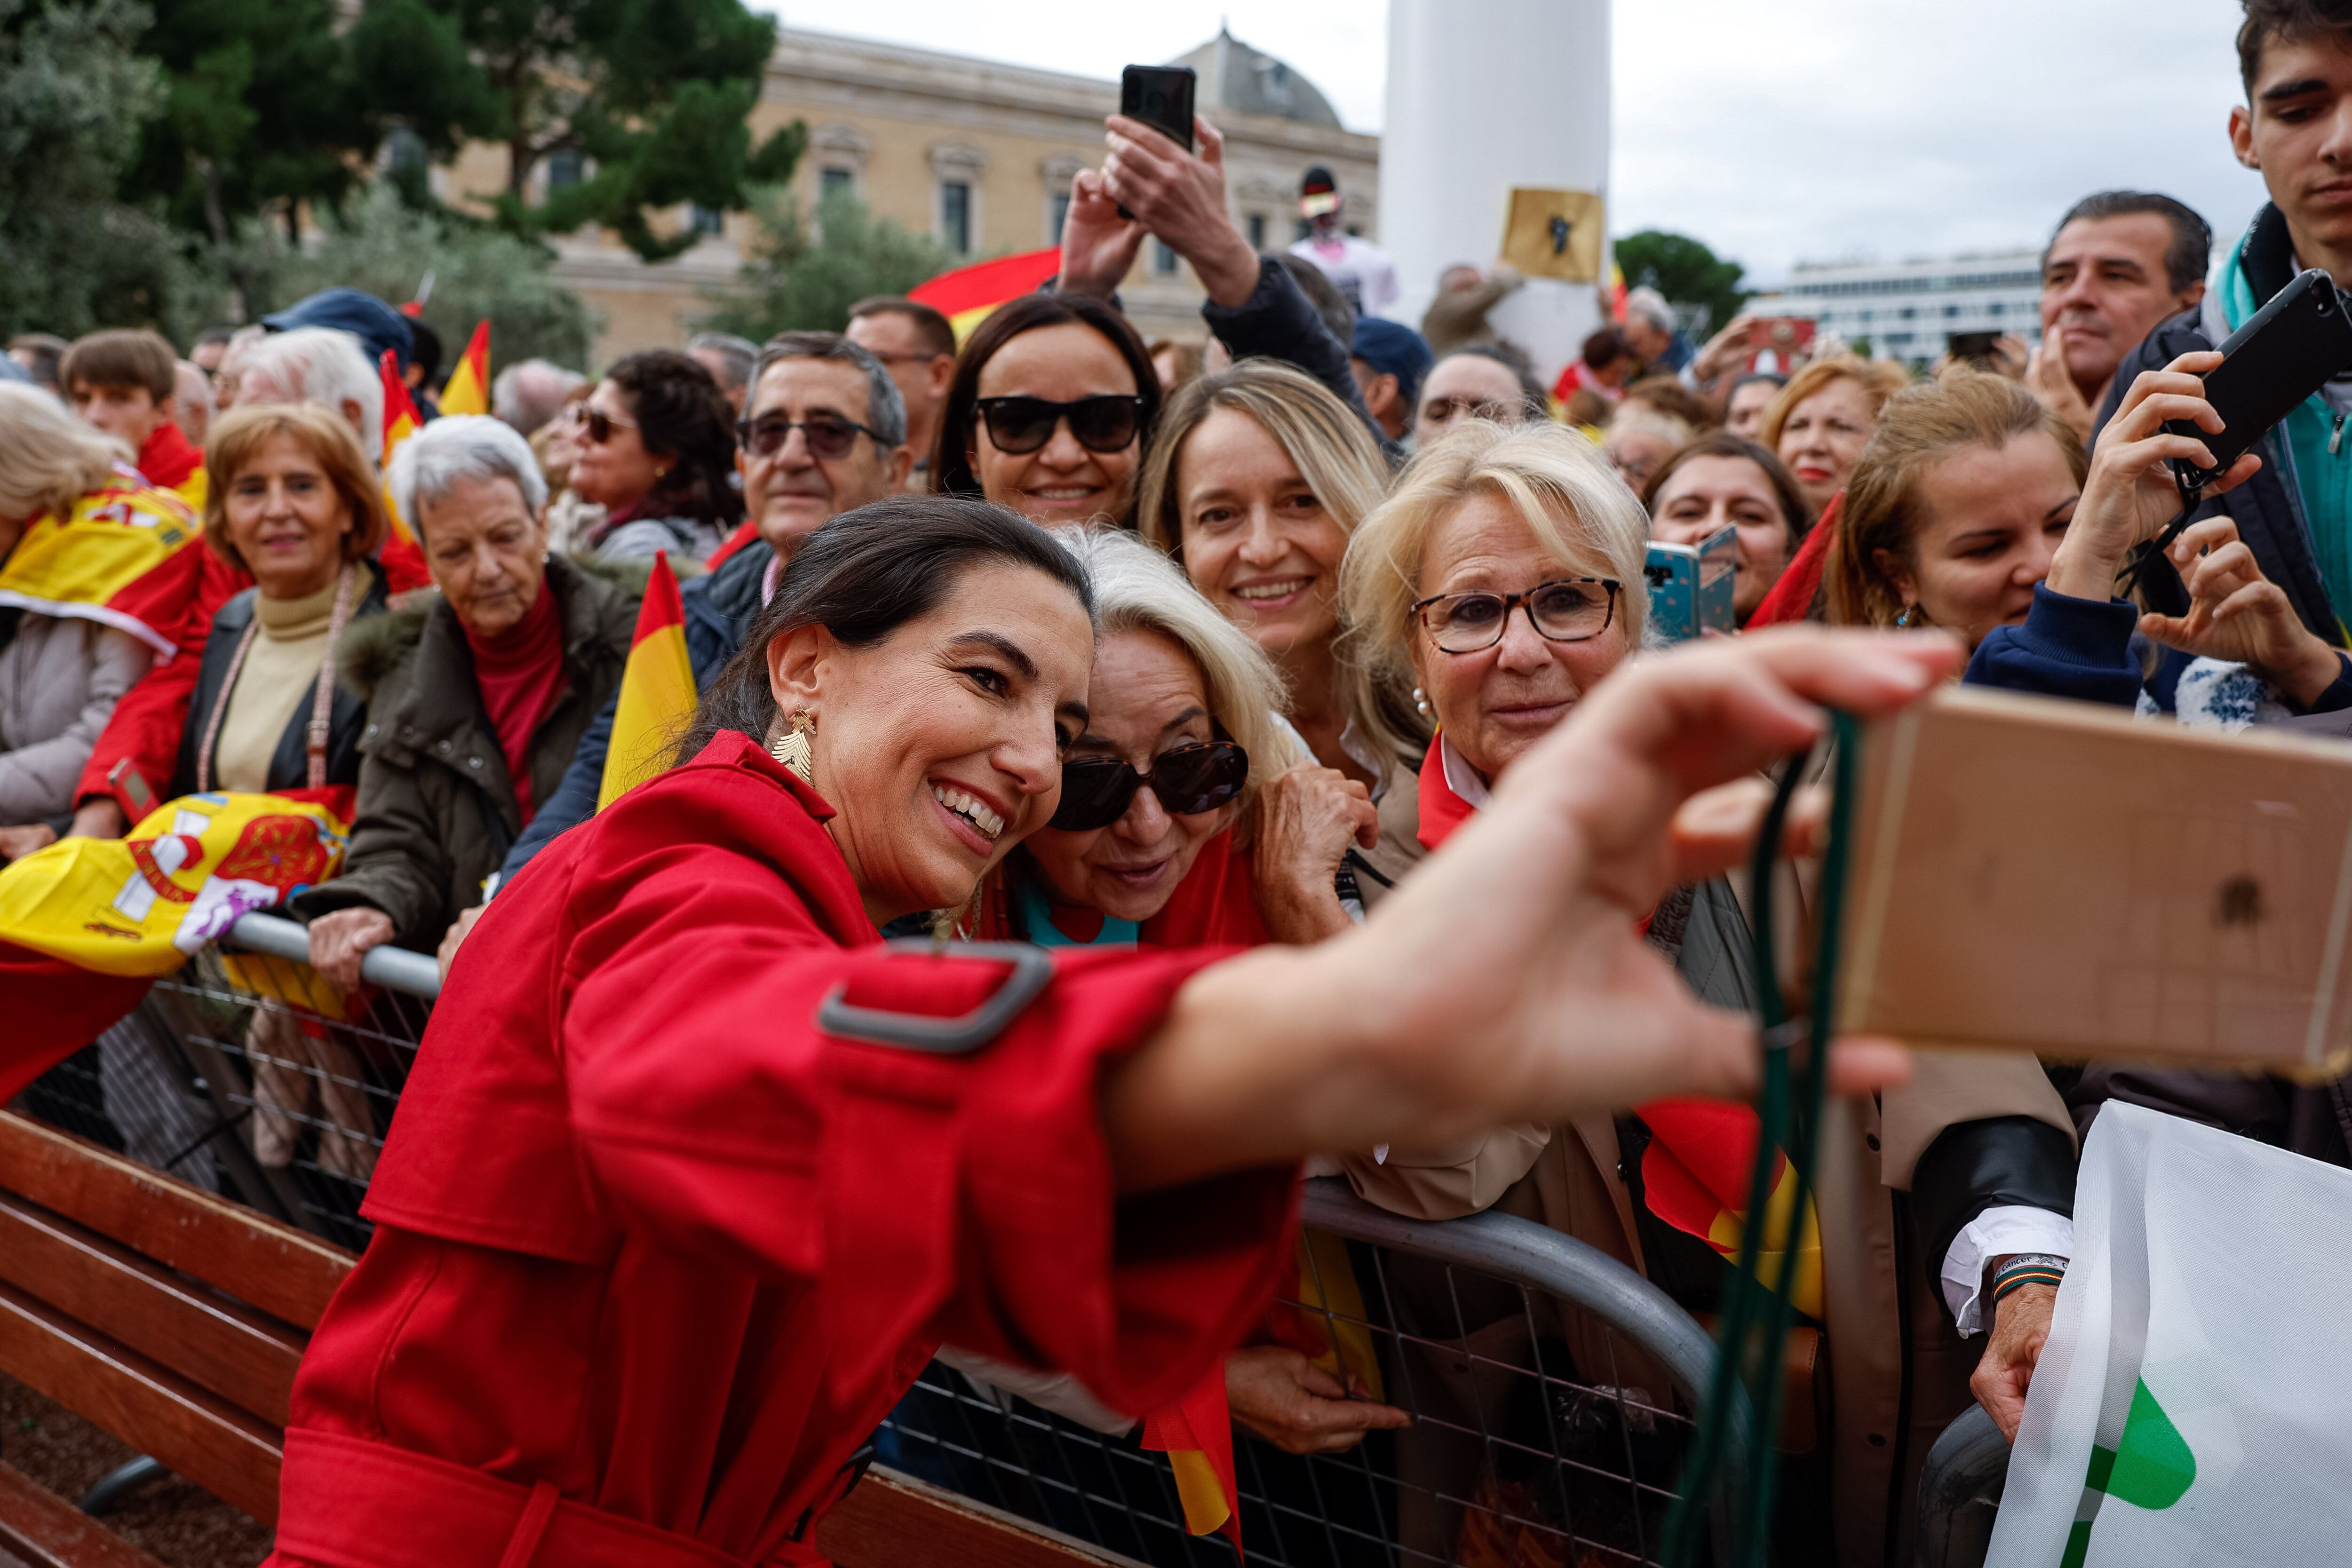 La portavoz de Vox en la Asamblea de Madrid, Rocío Monasterio, se fotografía con asistentes a la manifestación.